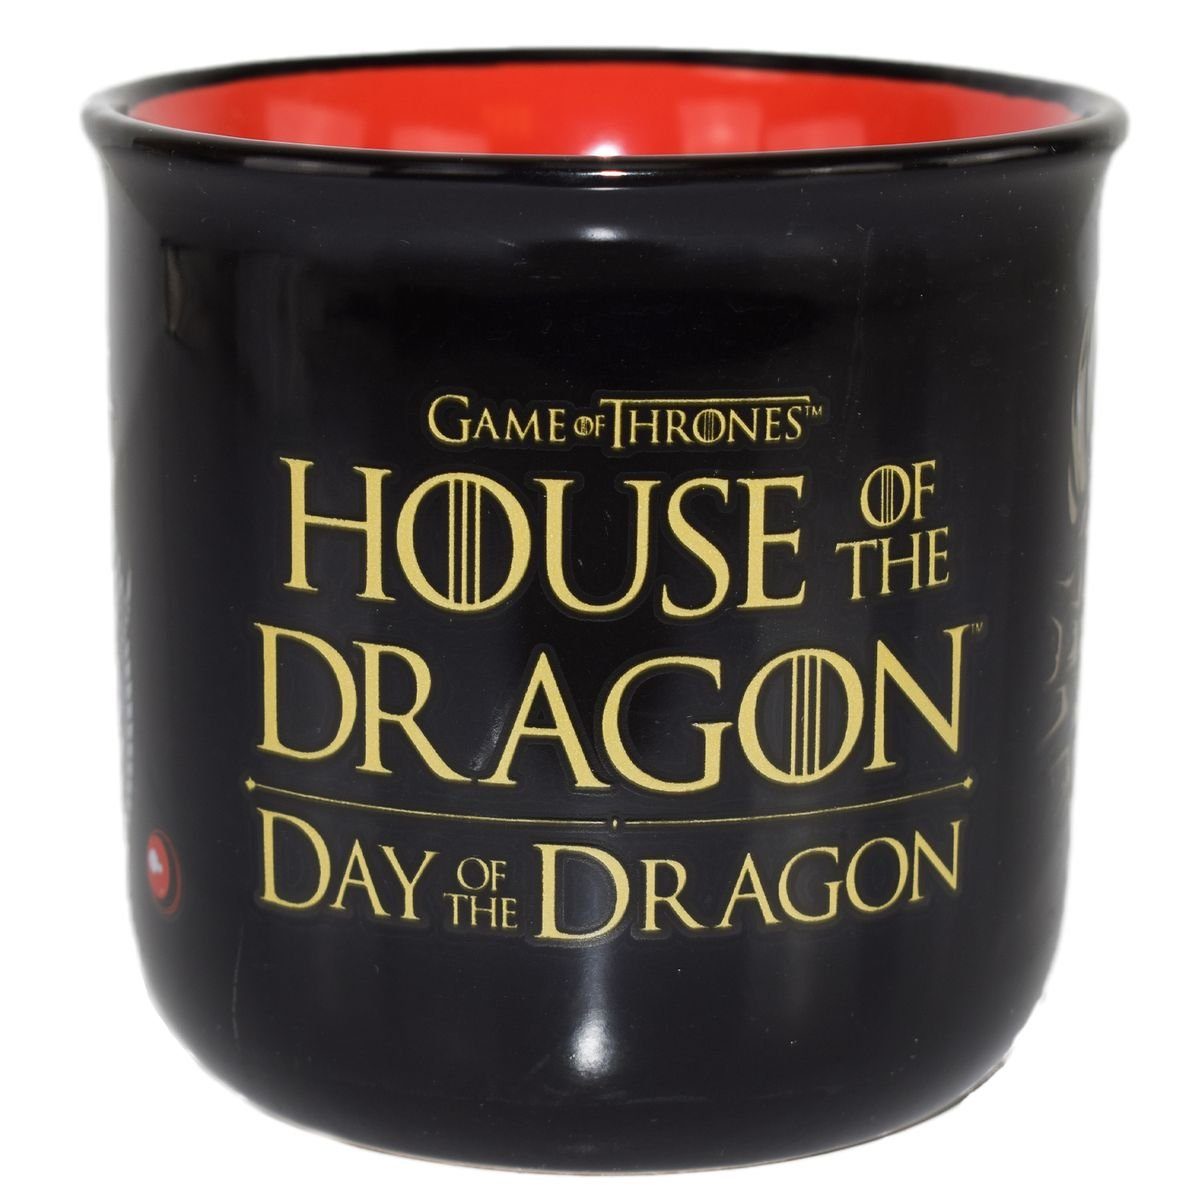 Stor Tasse Game of Thrones Day of the Dragon Frühstückstasse ca. 400 ml Tasse, Keramik, authentisches Design